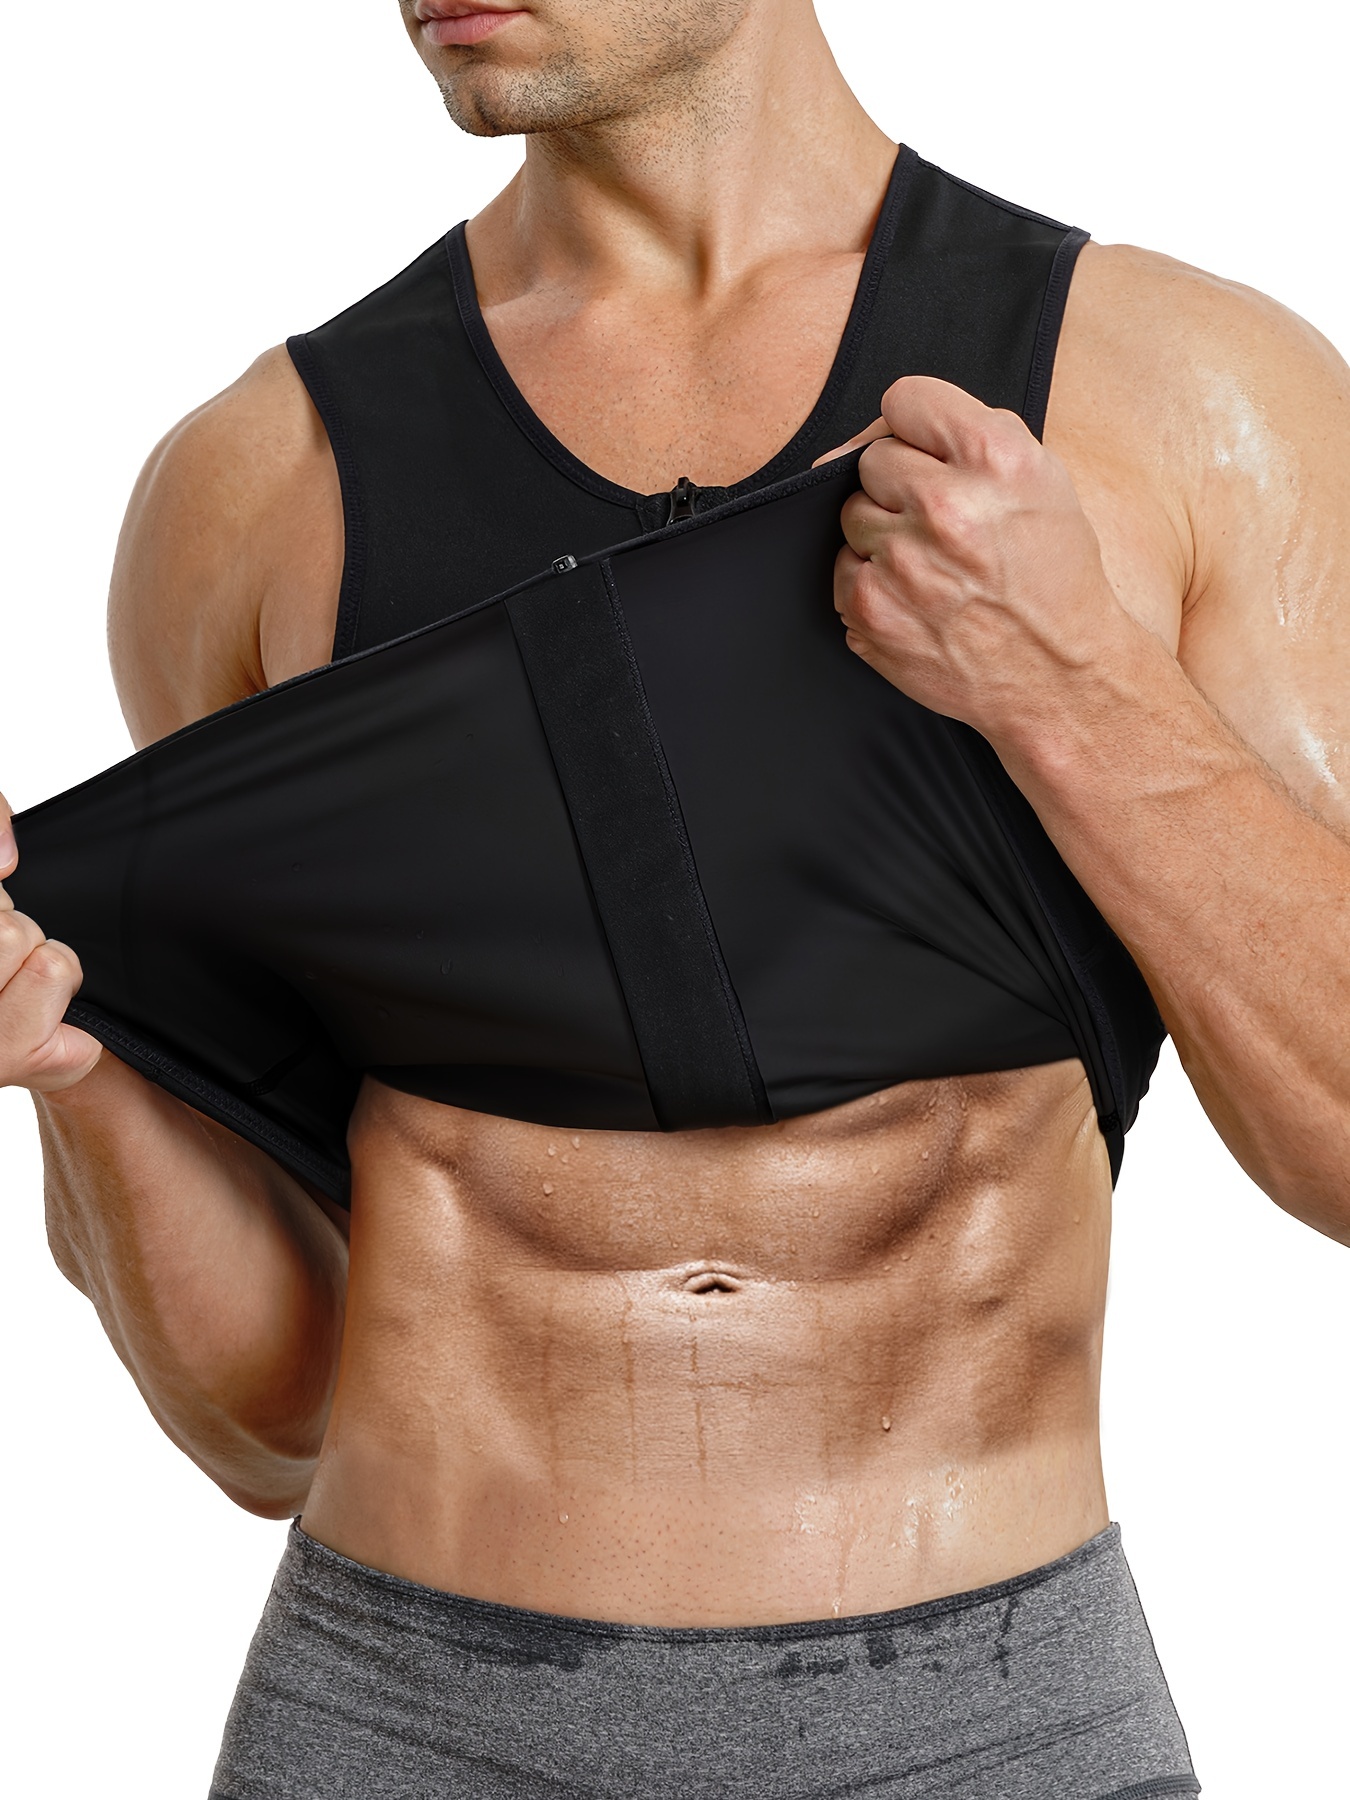 Women's Bra Vest Sauna Effect Neoprene Sweat it Out Zipper Sport